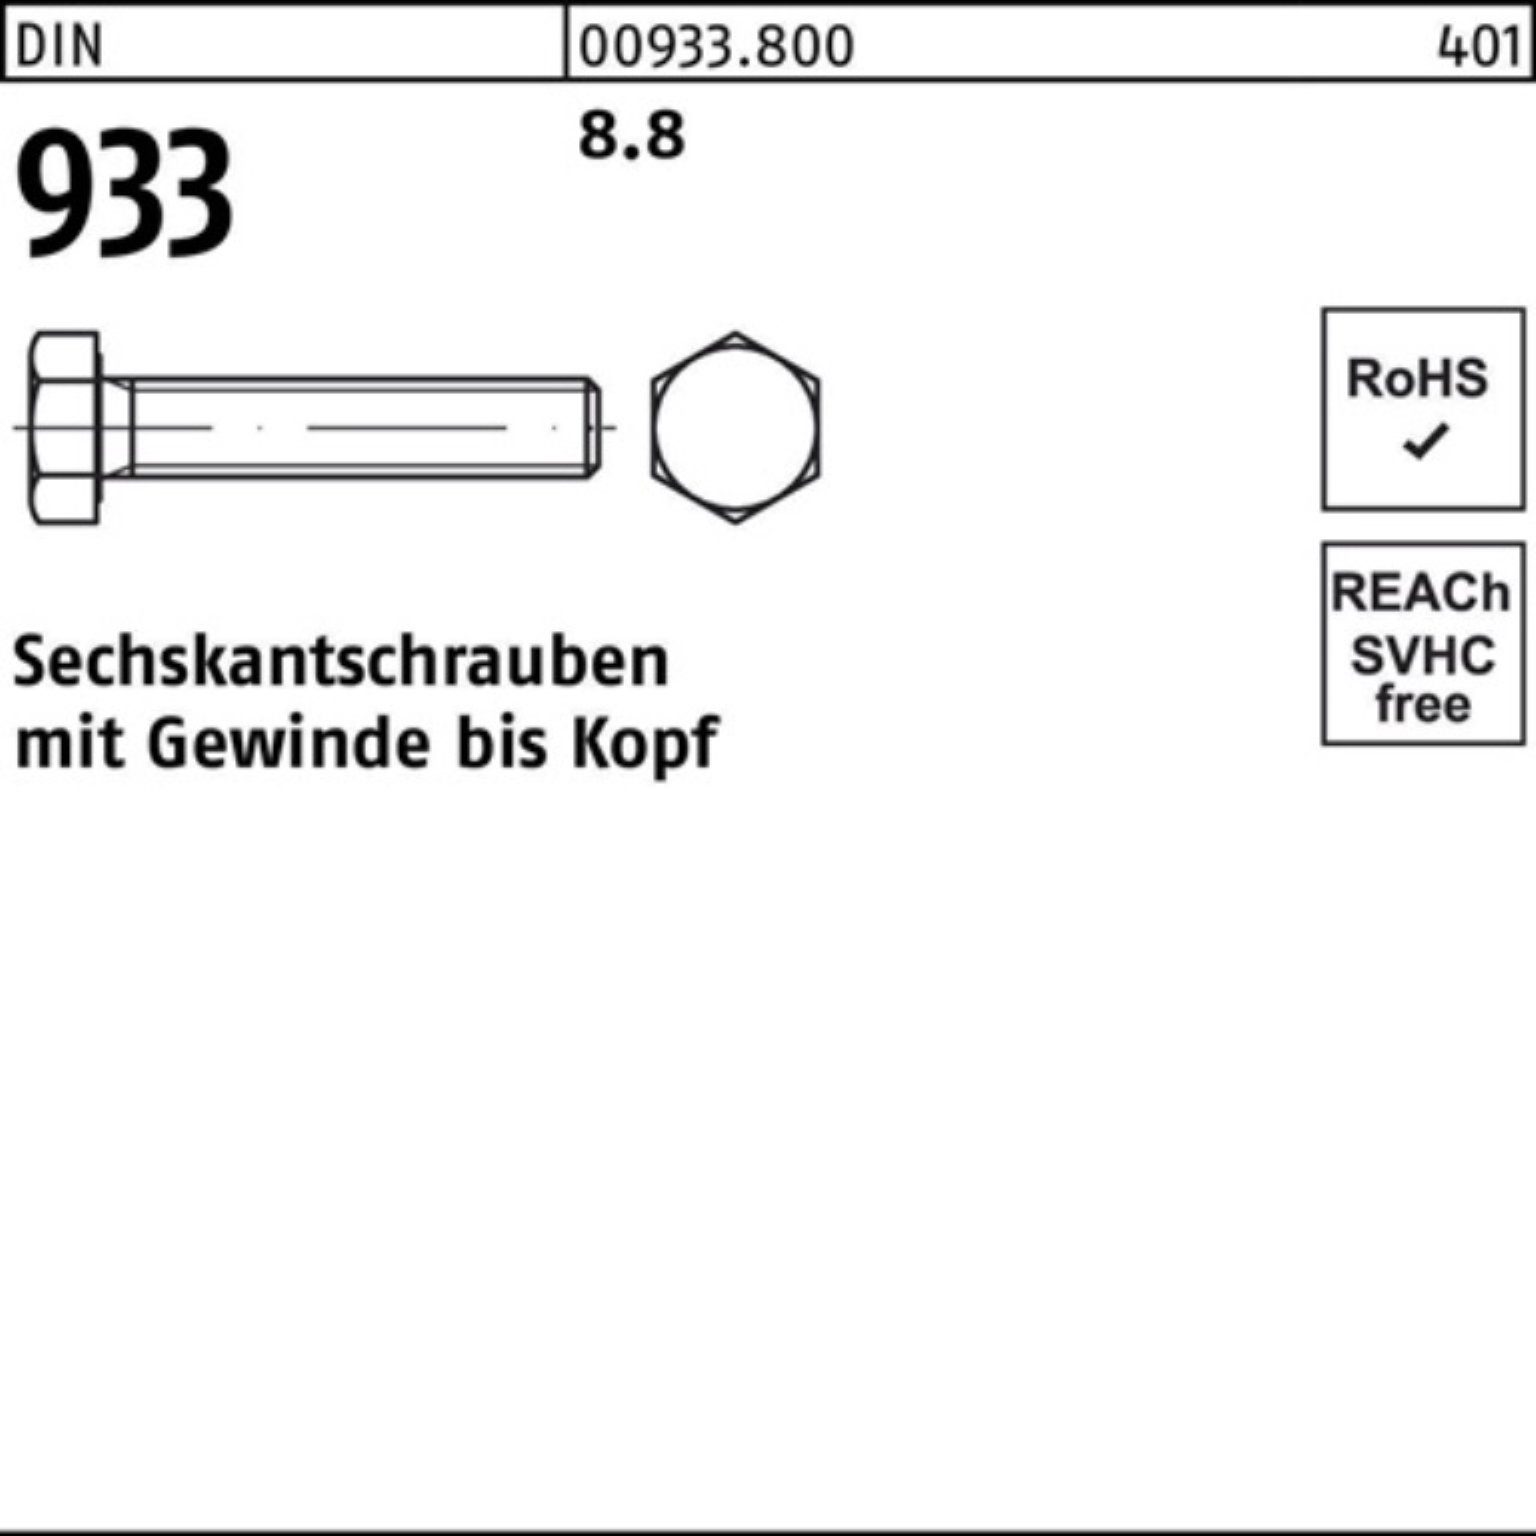 Reyher Sechskantschraube 100er Pack Sechskantschraube DIN 8.8 220 M42x VG DIN 1 Stück 933 933